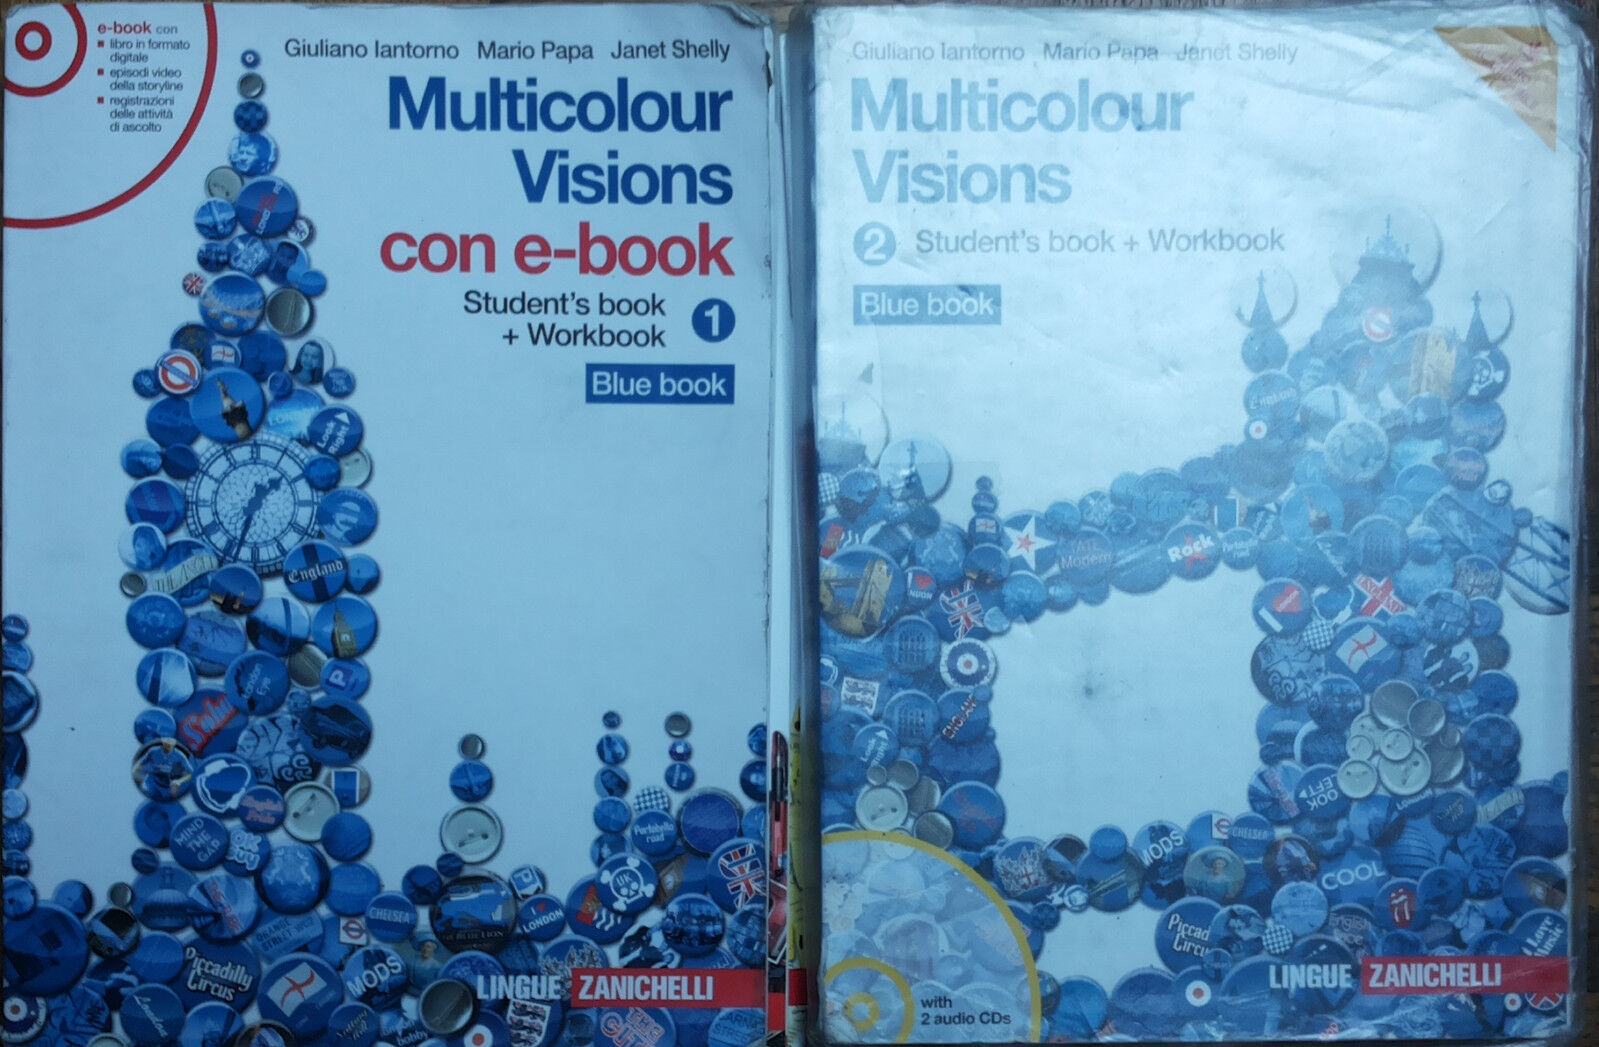 Multicolour visions vol.1 e vol.2 - AA.VV. - Zanichelli - R